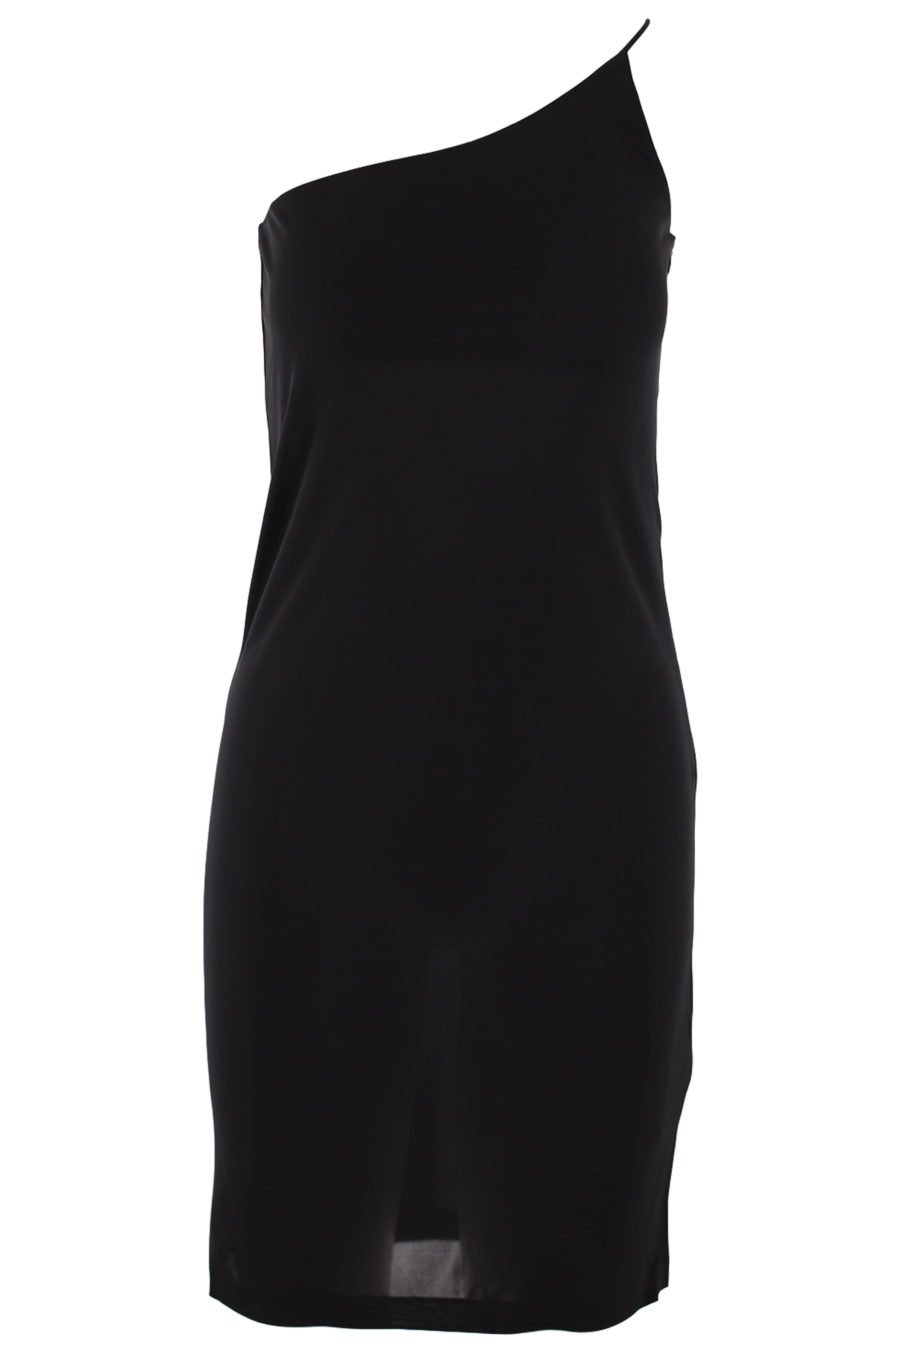 Asymmetrisches schwarzes Kleid - IMG 0729